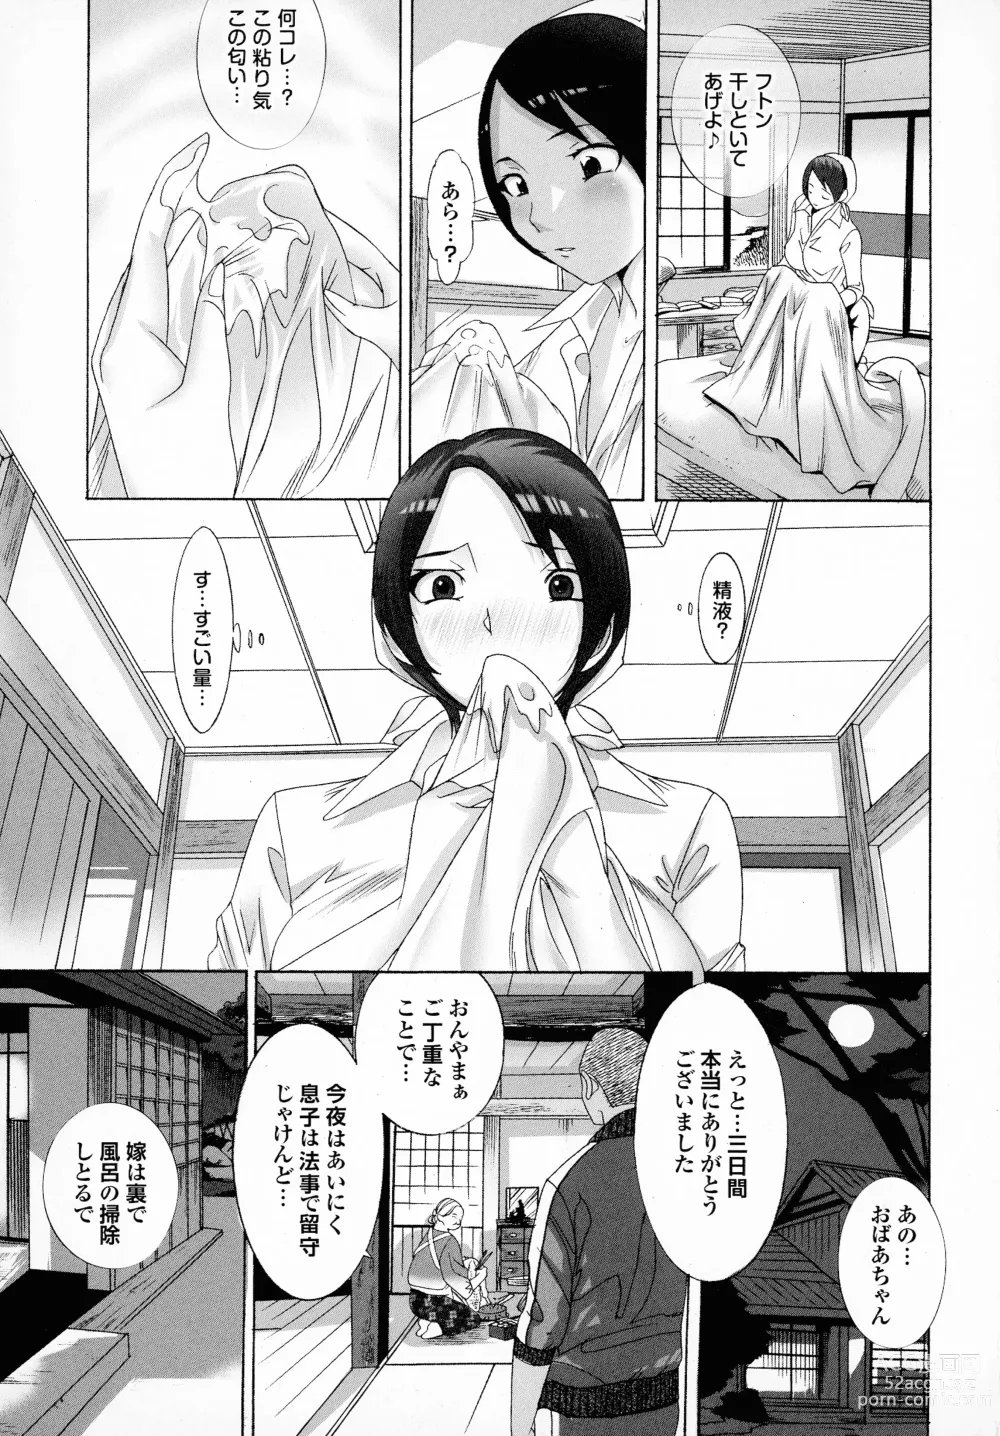 Page 165 of manga Okaa-san mo Issho